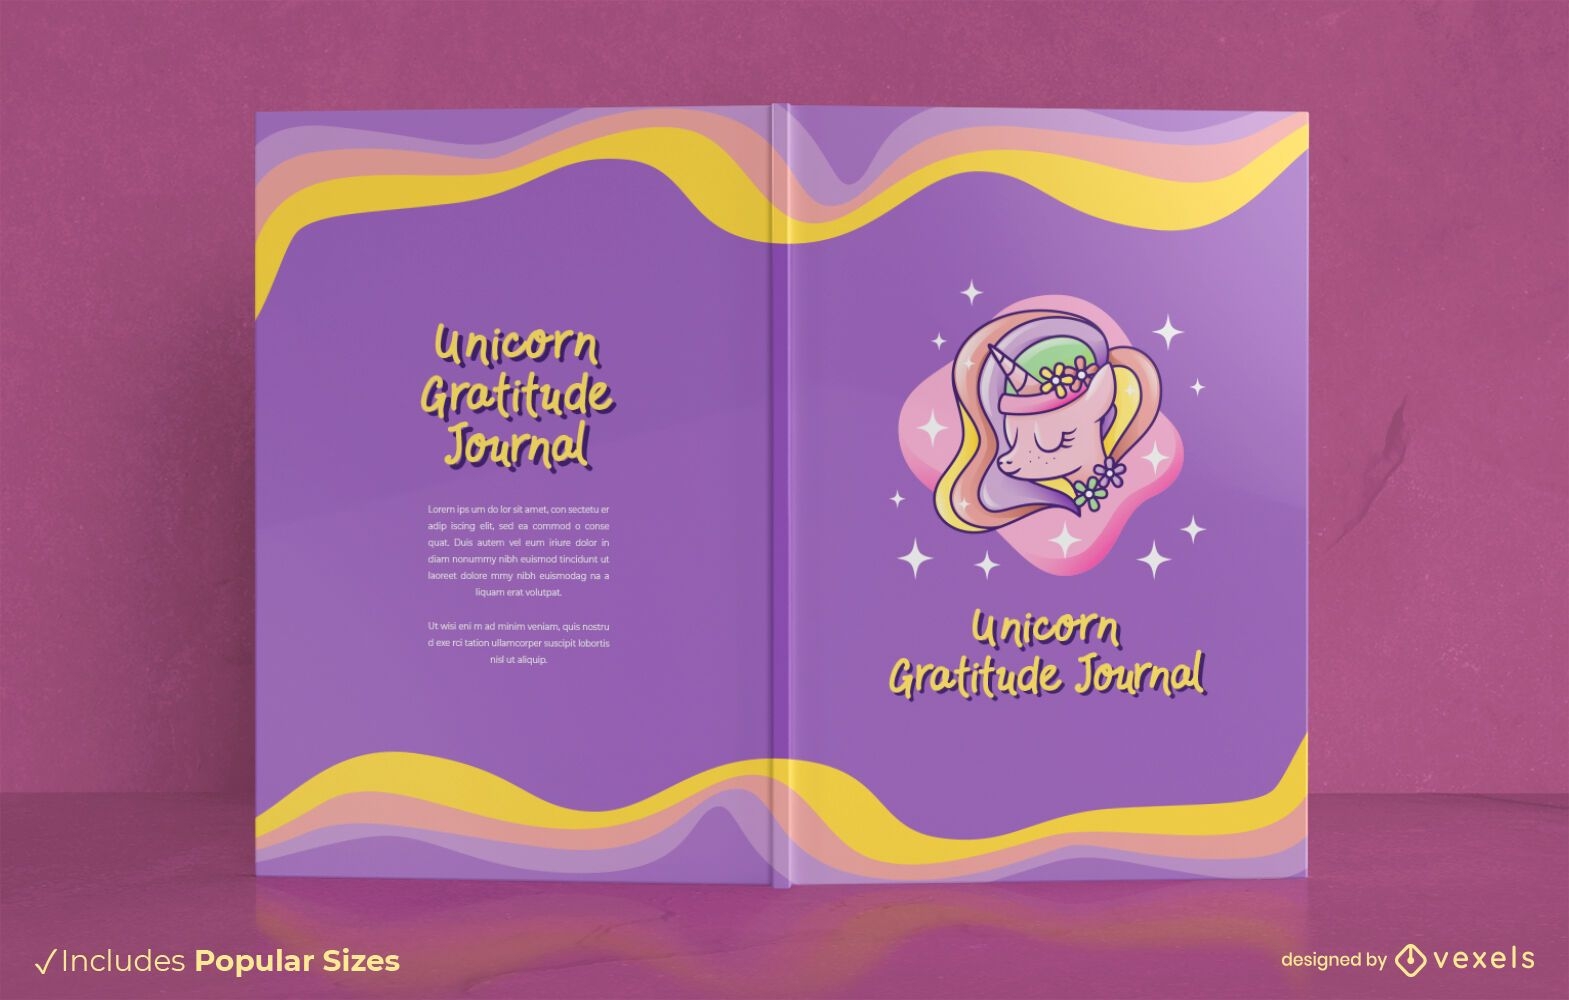 Unicorn gratitude book cover design